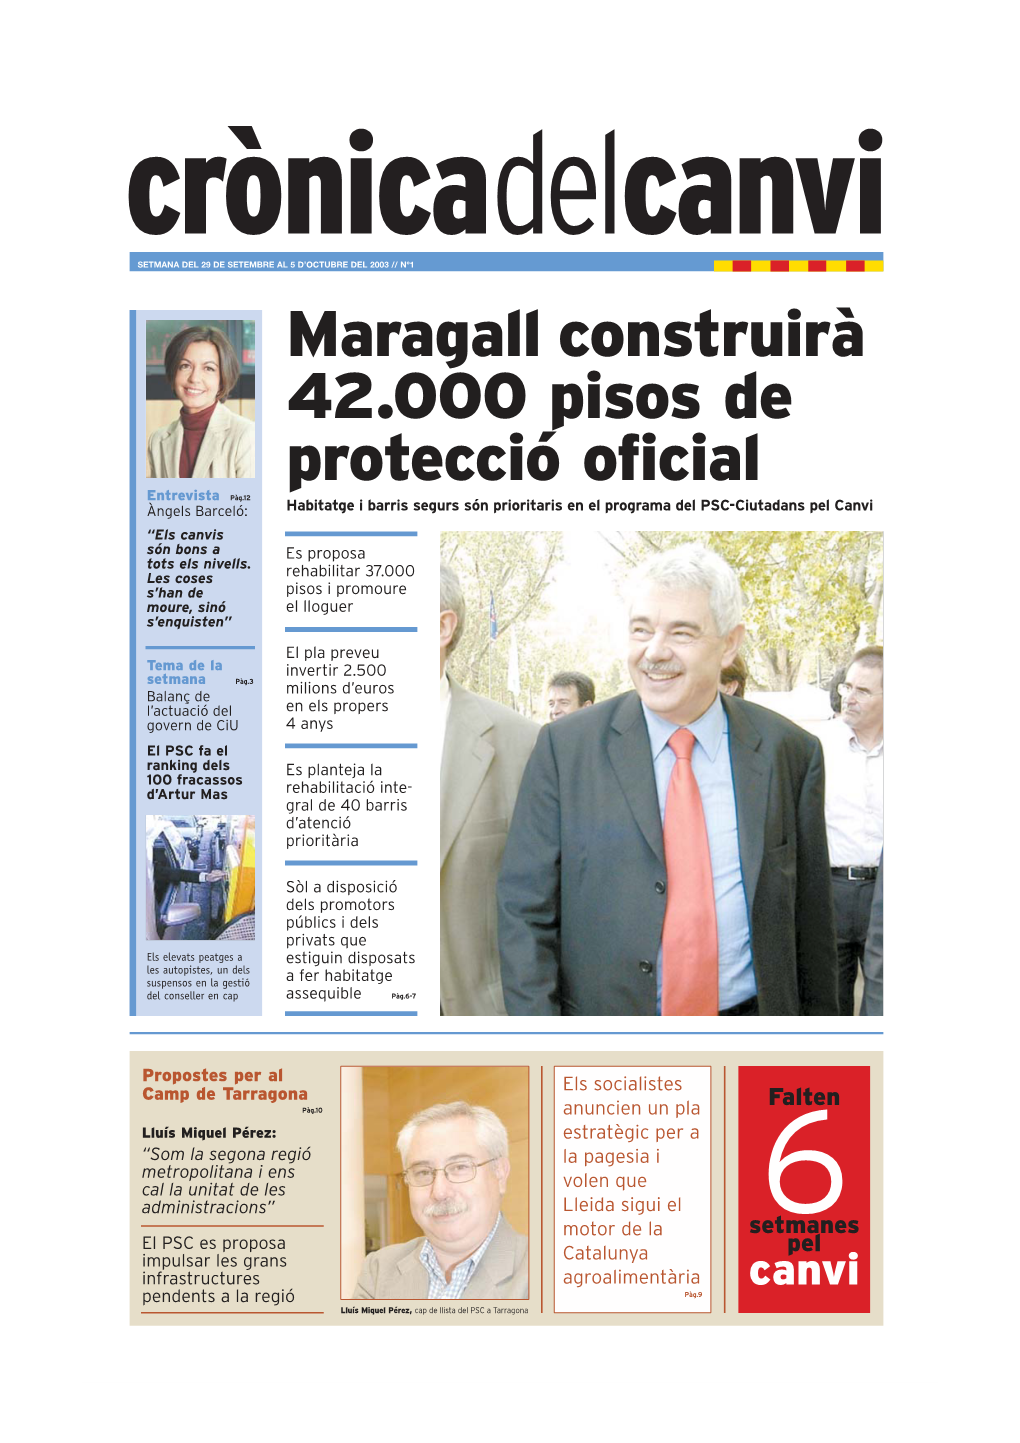 Maragall Construirà 42.000 Pisos De Protecció Oficial